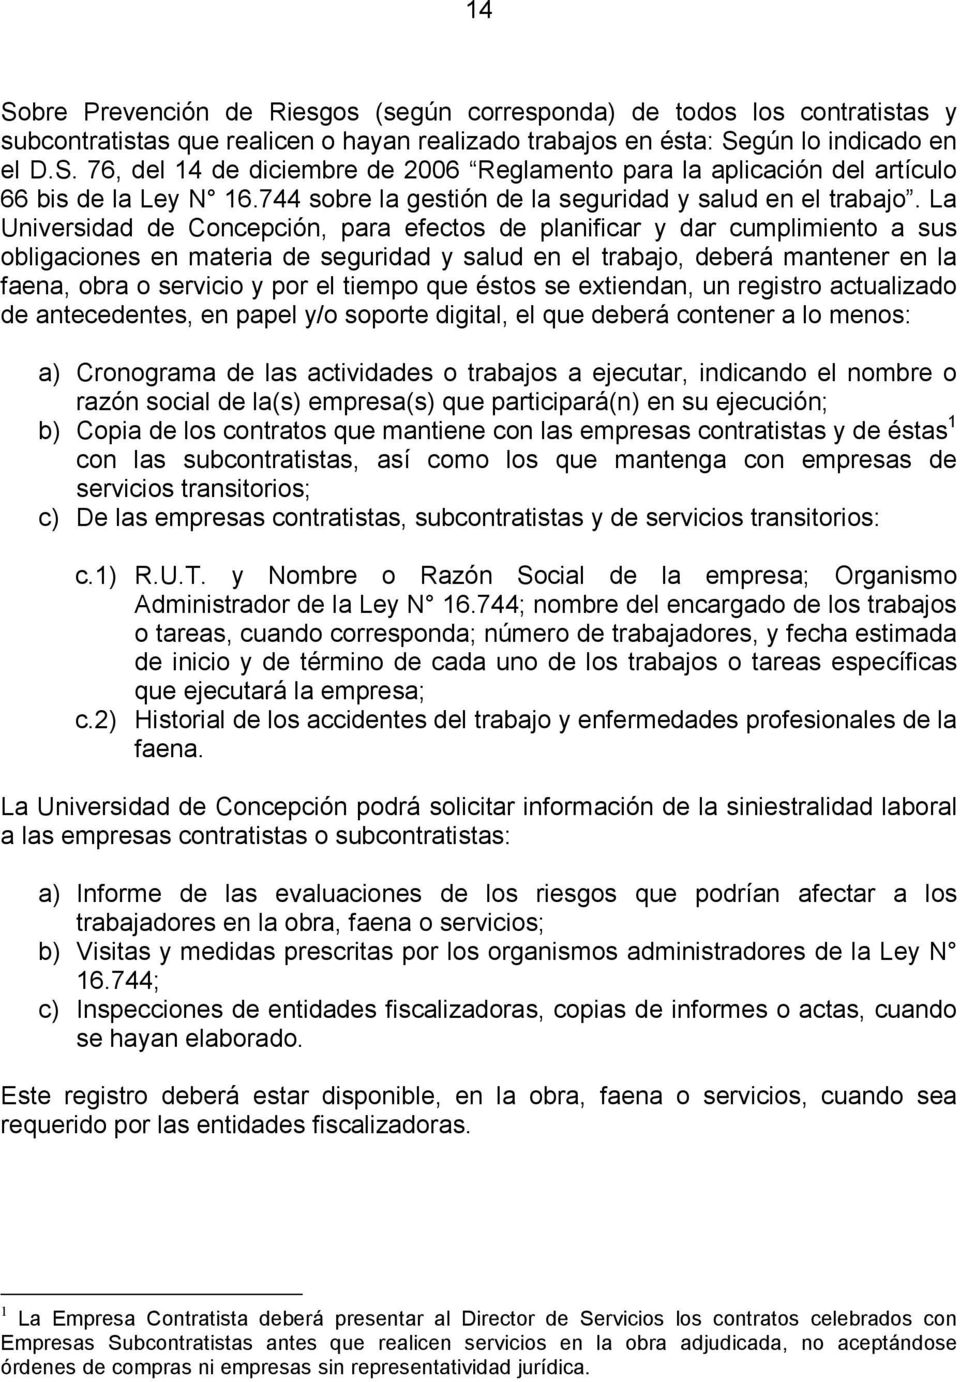 La Universidad de Concepción, para efectos de planificar y dar cumplimiento a sus obligaciones en materia de seguridad y salud en el trabajo, deberá mantener en la faena, obra o servicio y por el